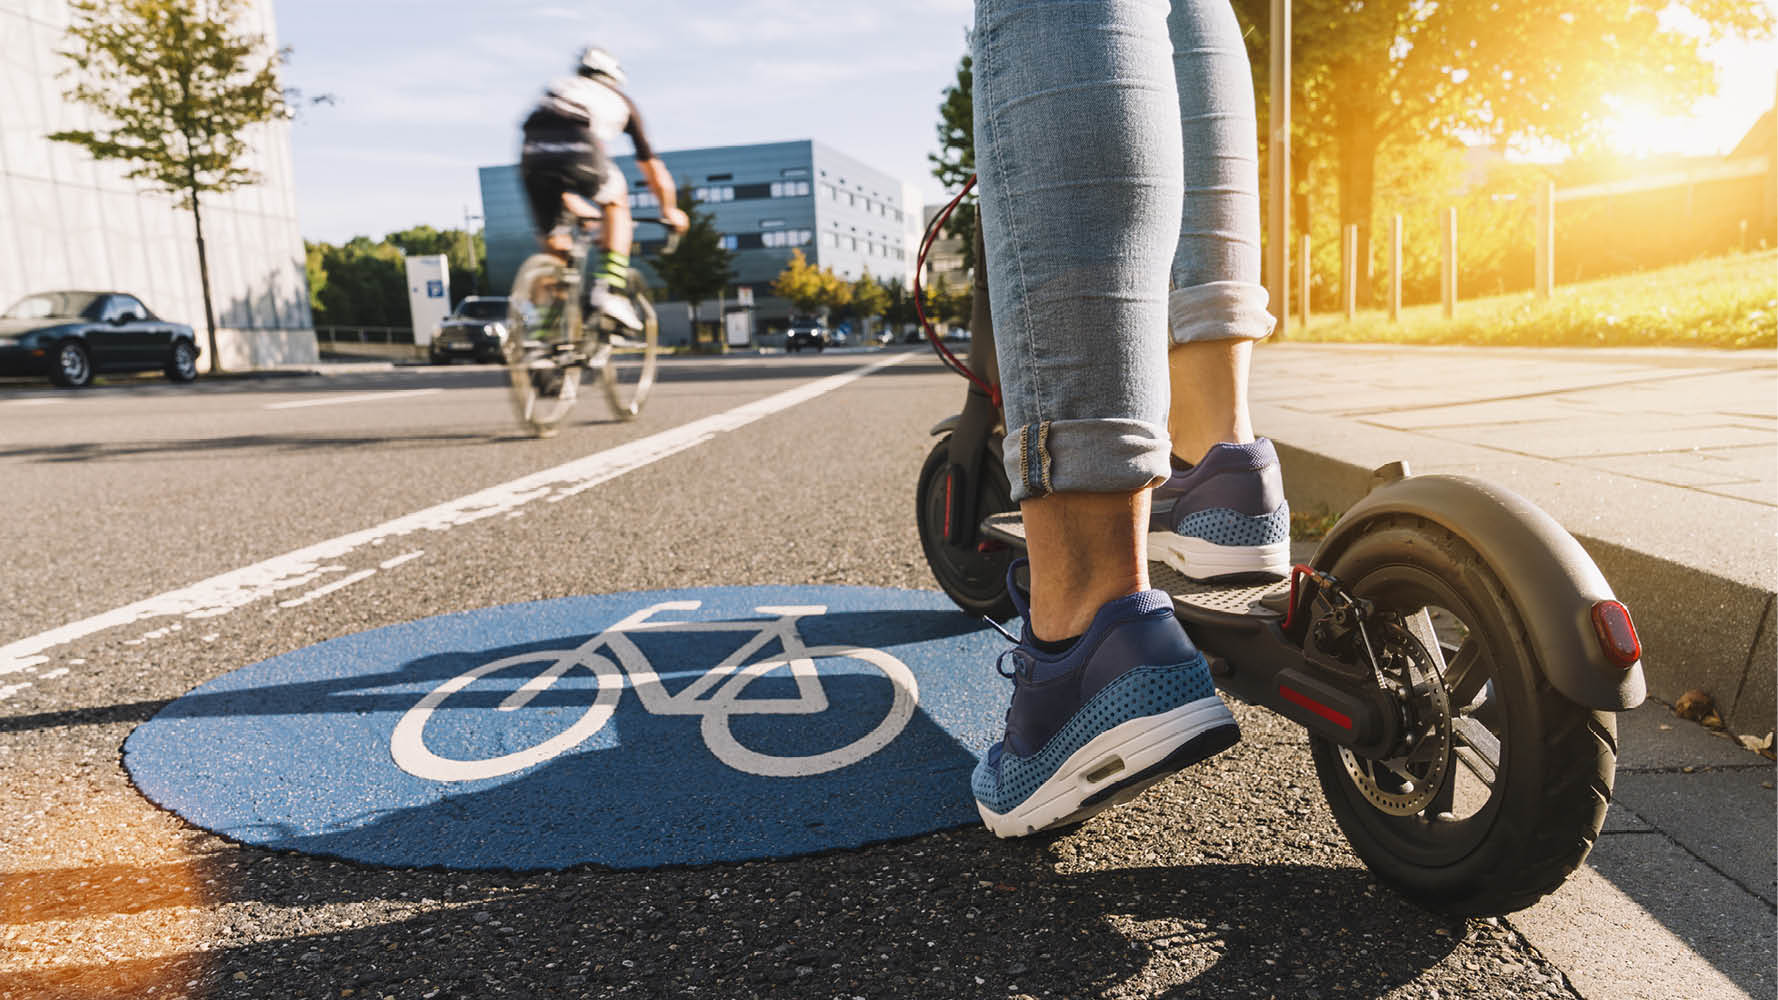 Från och med den 1 september är det inte längre tillåtet att parkera elsparkcykeln på gång- och cykelbanor eller att köra på gångbanor och trottoarer.

– De nya reglerna ska förbättra framkomligheten, trafiksäkerheten och skapa trygghet för alla de som rör sig på våra gångbanor, säger Kristofer Elo, utredare på Transportstyrelsen.